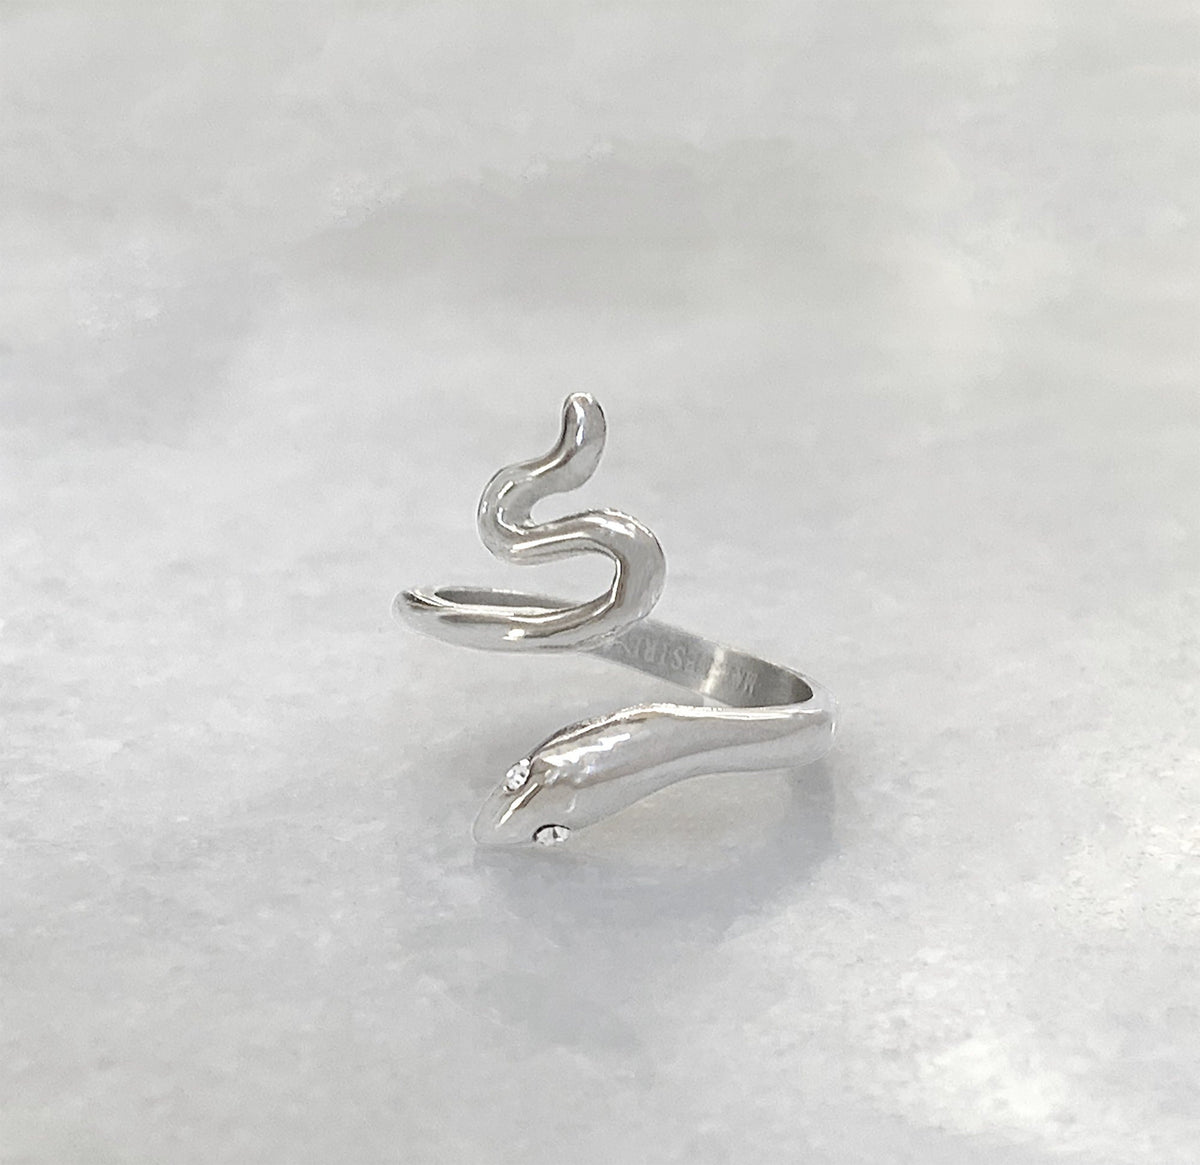 silver snake ring waterproof